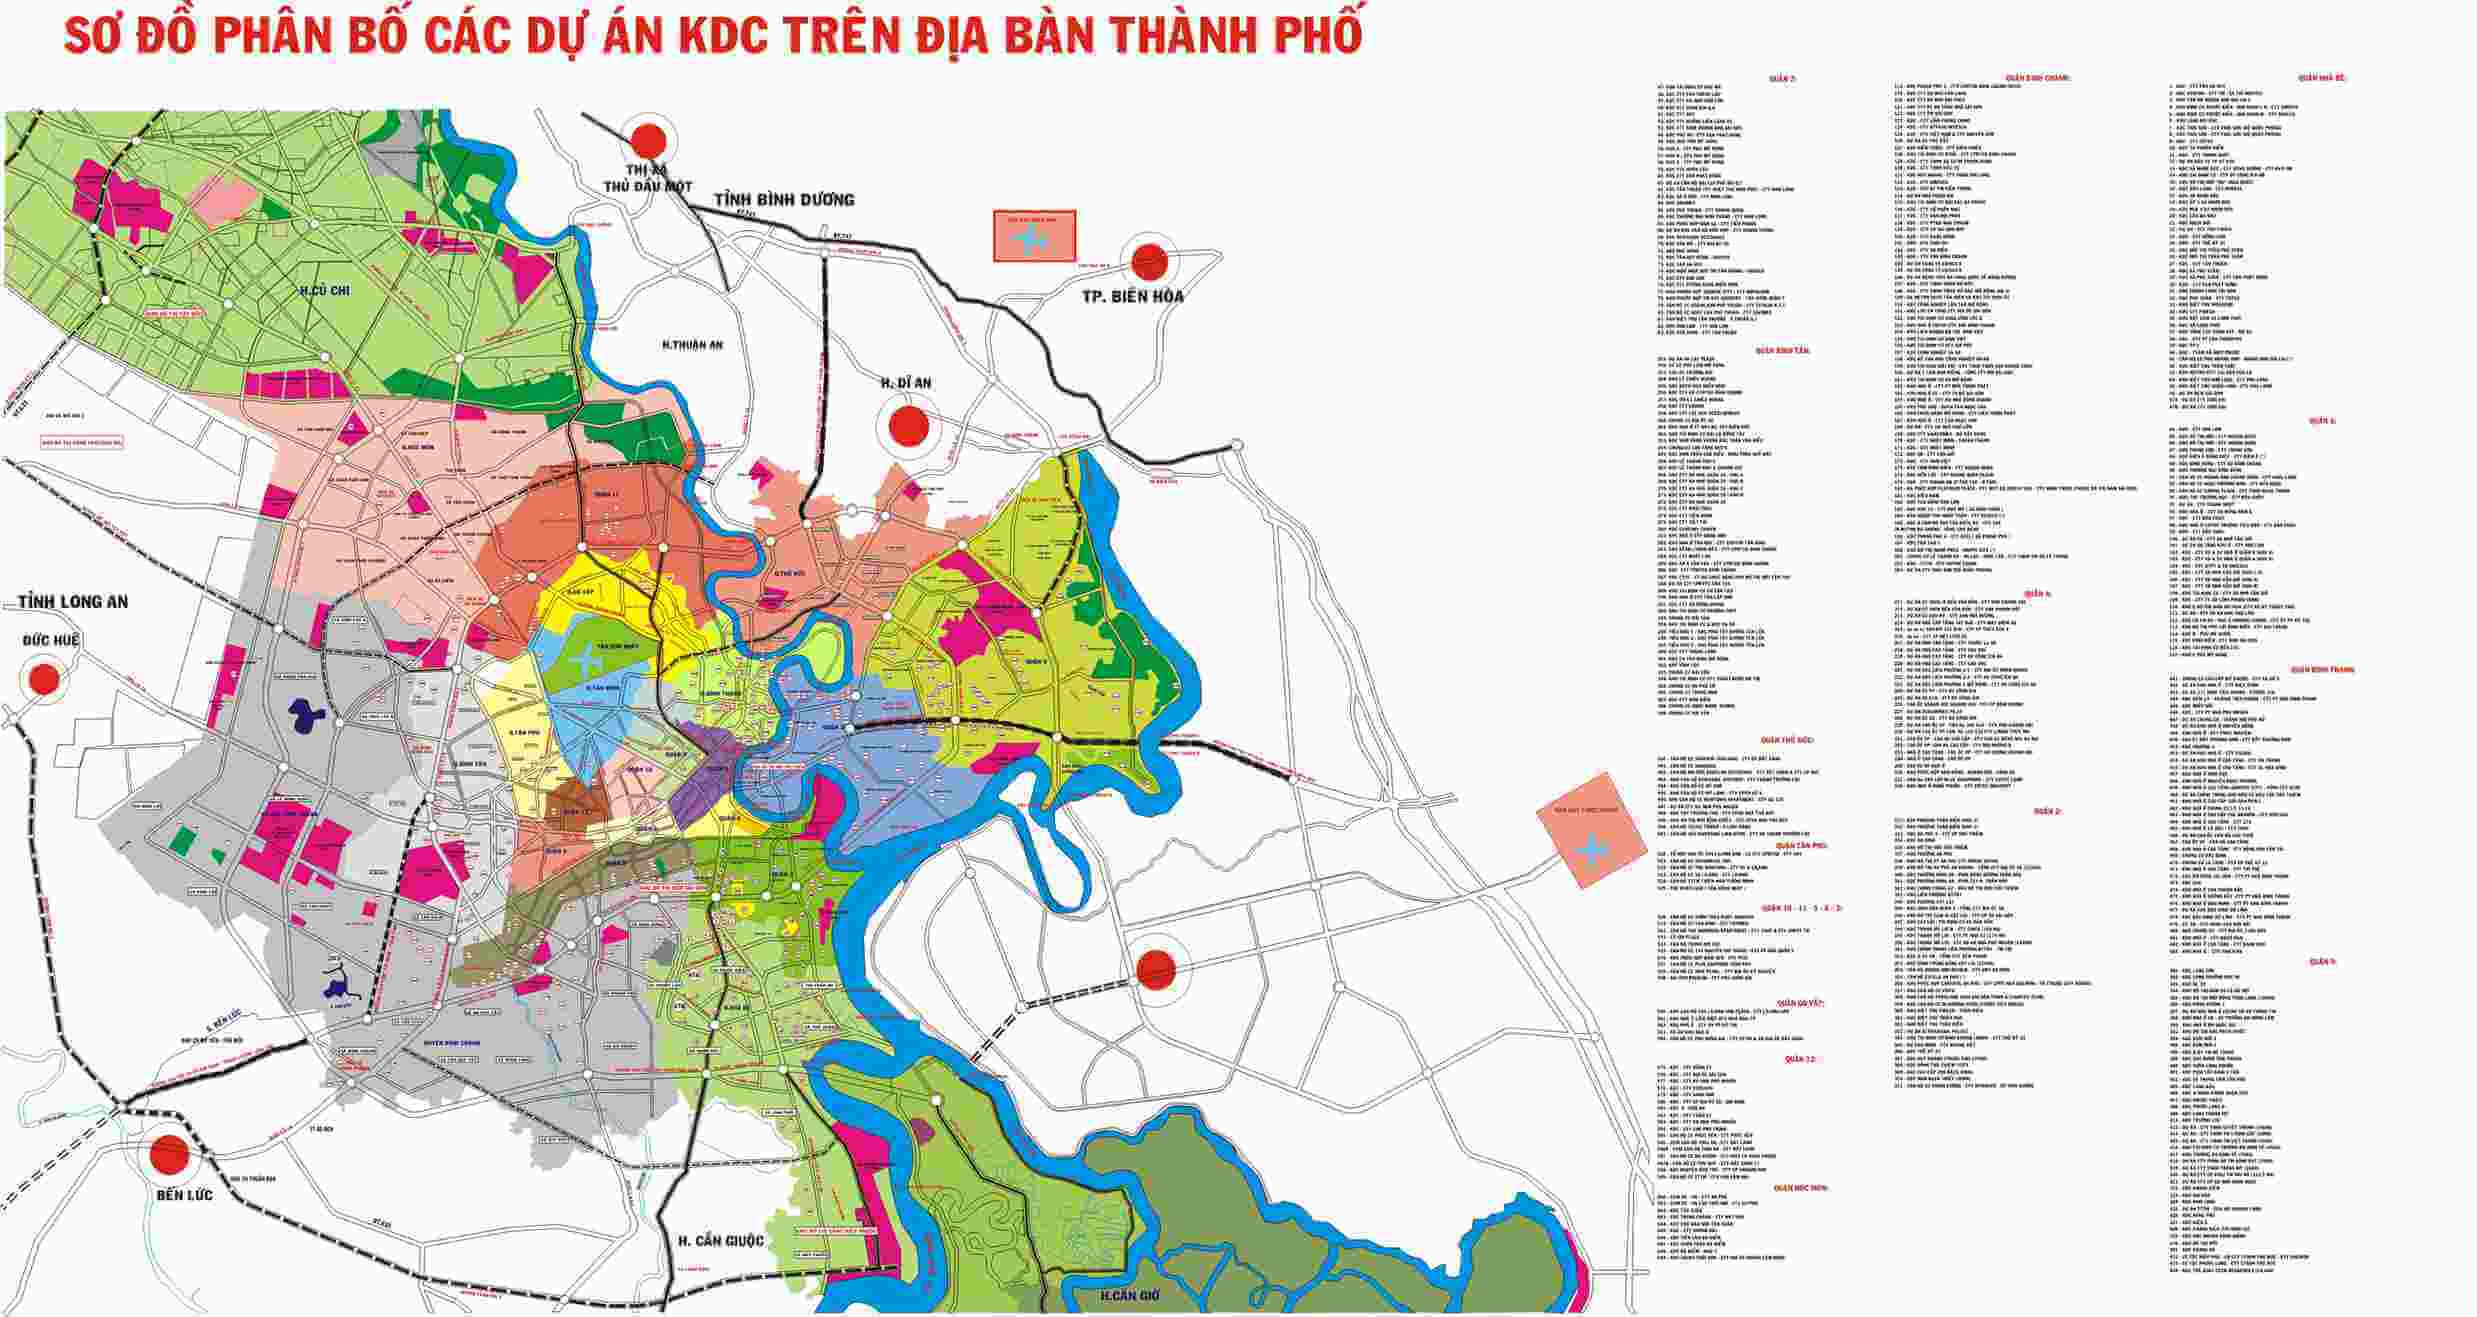 bản đồ quy hoạch phân bổ các dự án KDC trong địa bàn thành phố